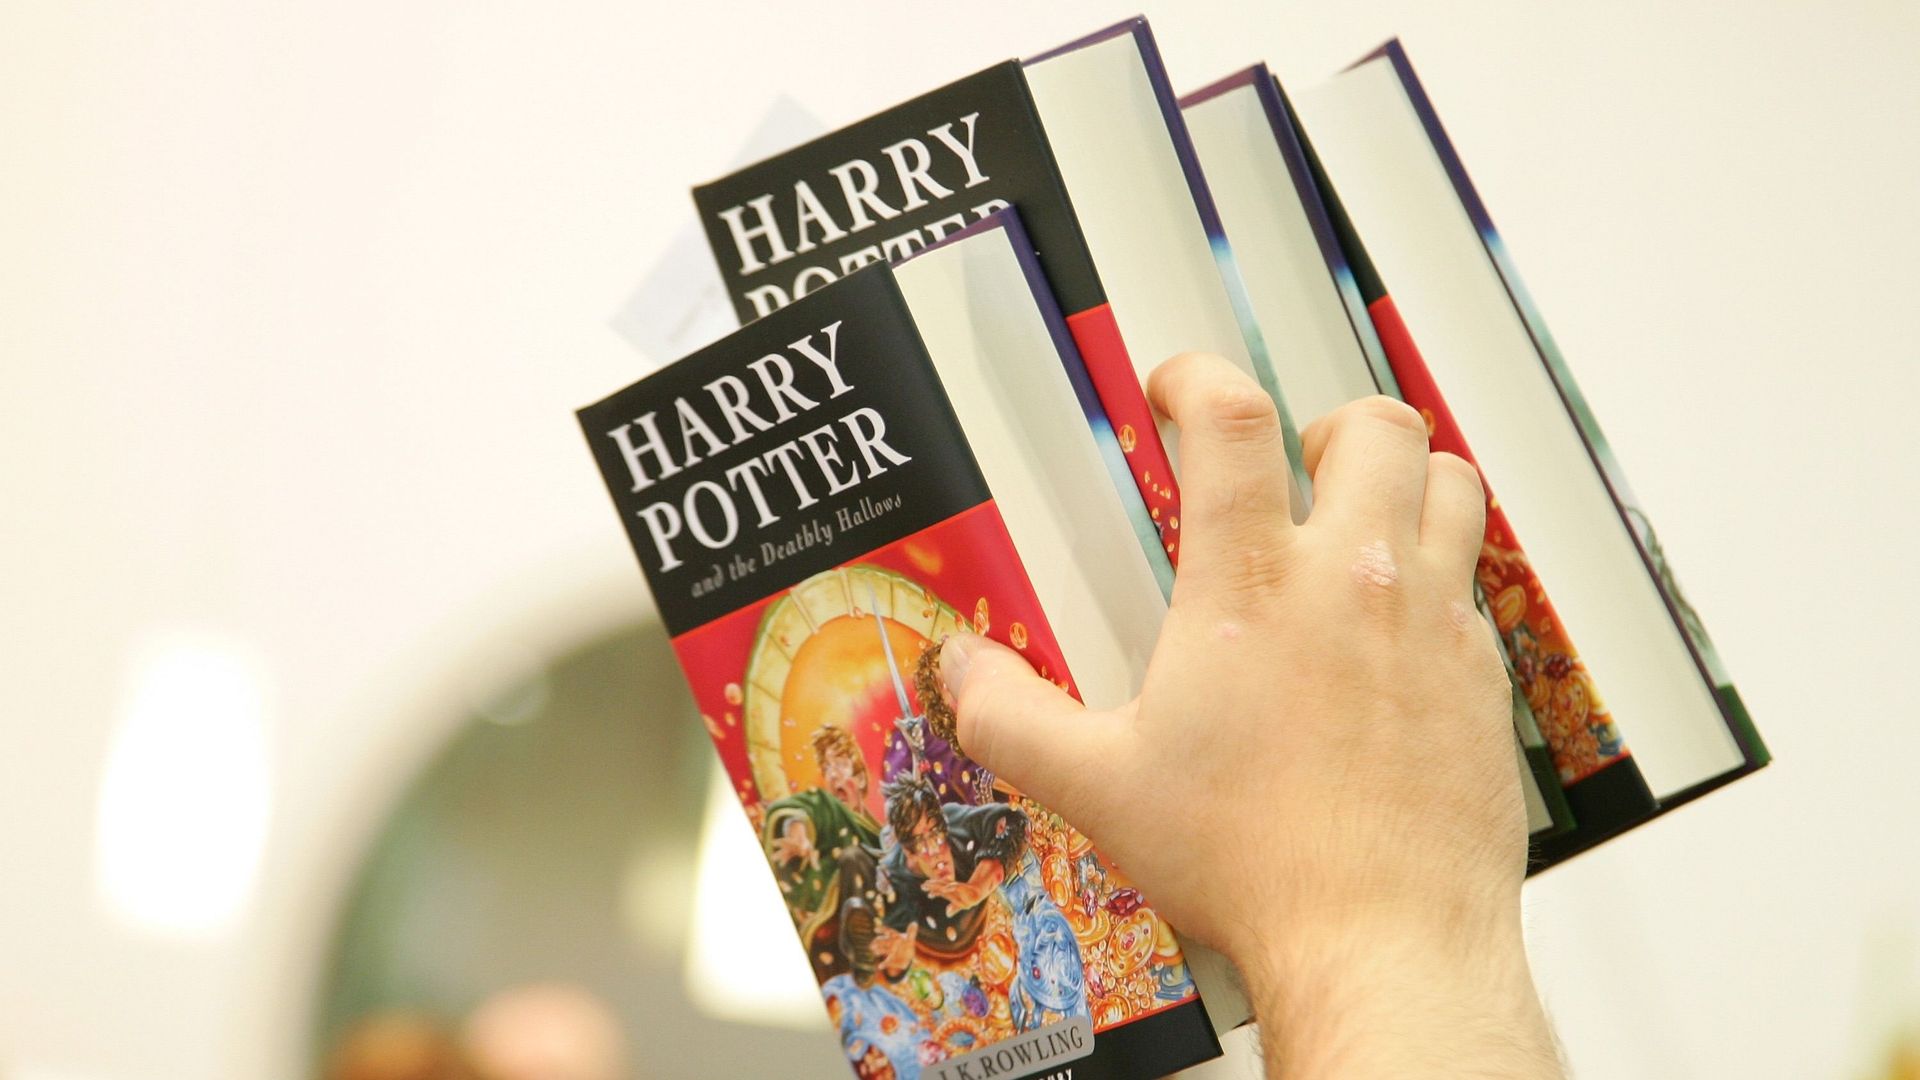 Le premier tome de Harry Potter a beau être sorti en 1997, la saga continue d’inspirer et d’être reprise que ce soit en films, jeu vidéo, pièce de théâtre…